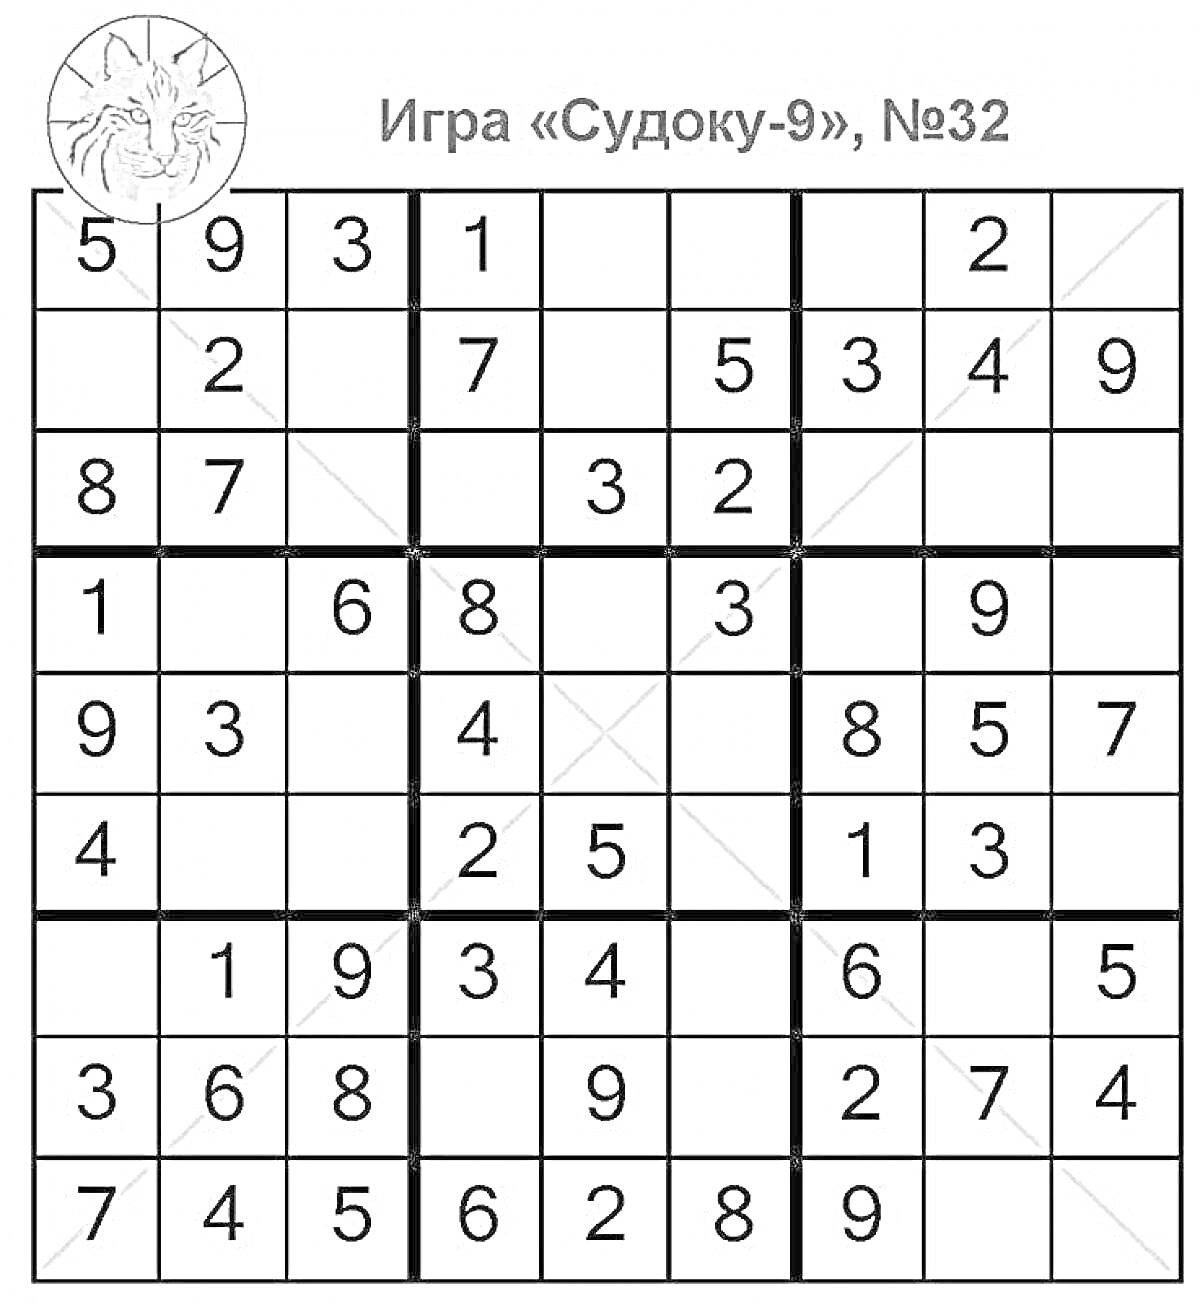 Судоку 9x9, игра №32, с изображением медальона